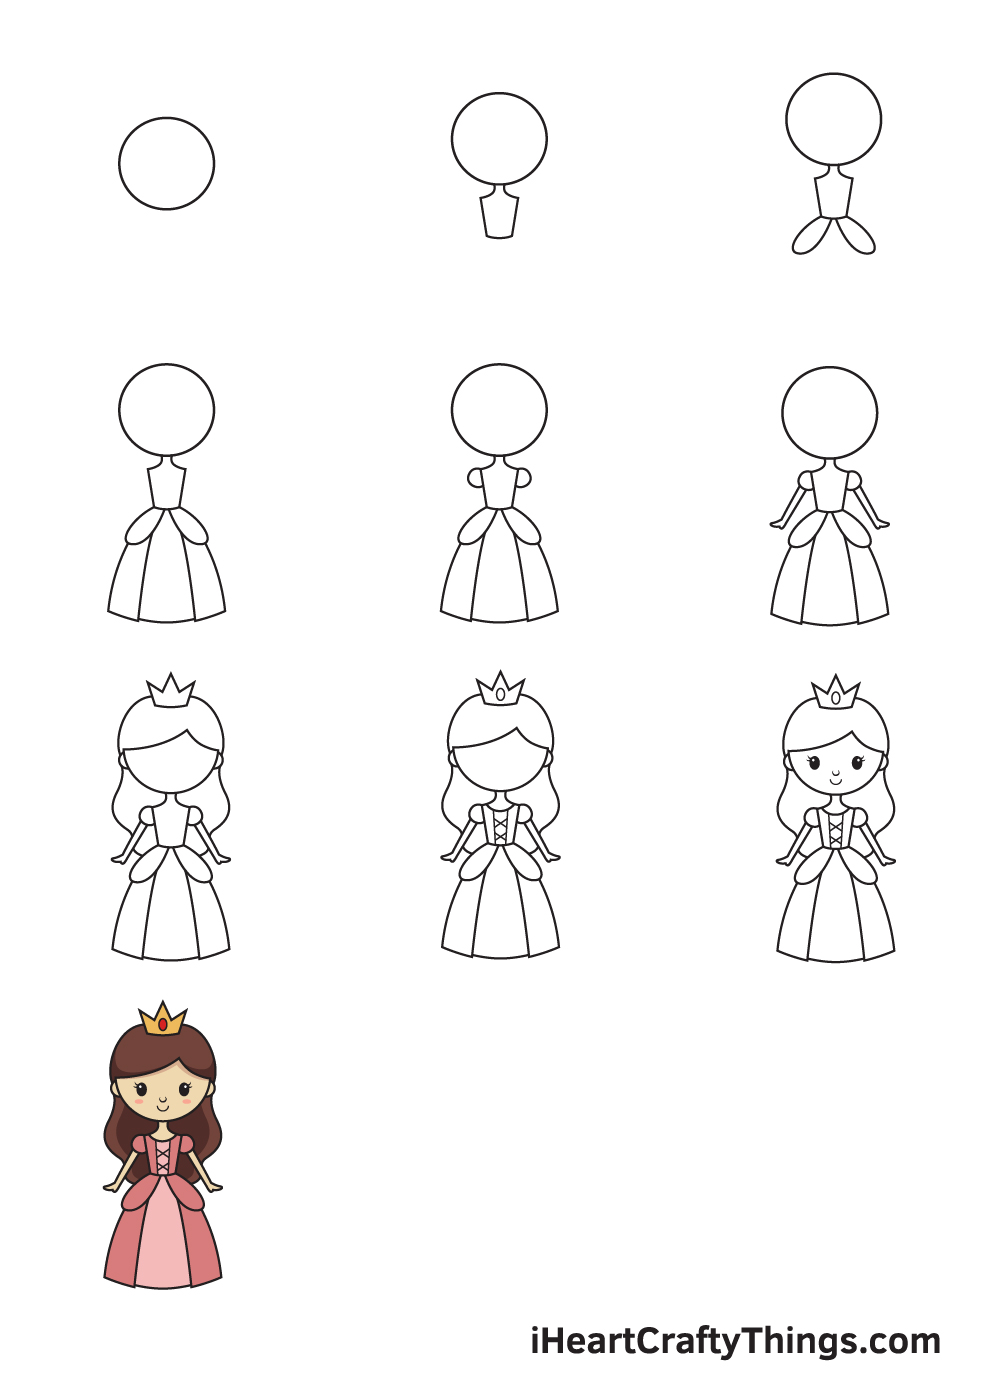 Drawing Princess in 10 Easy Steps - Hướng dẫn chi tiết cách vẽ công chúa đẹp dễ thương đơn giản từng bước